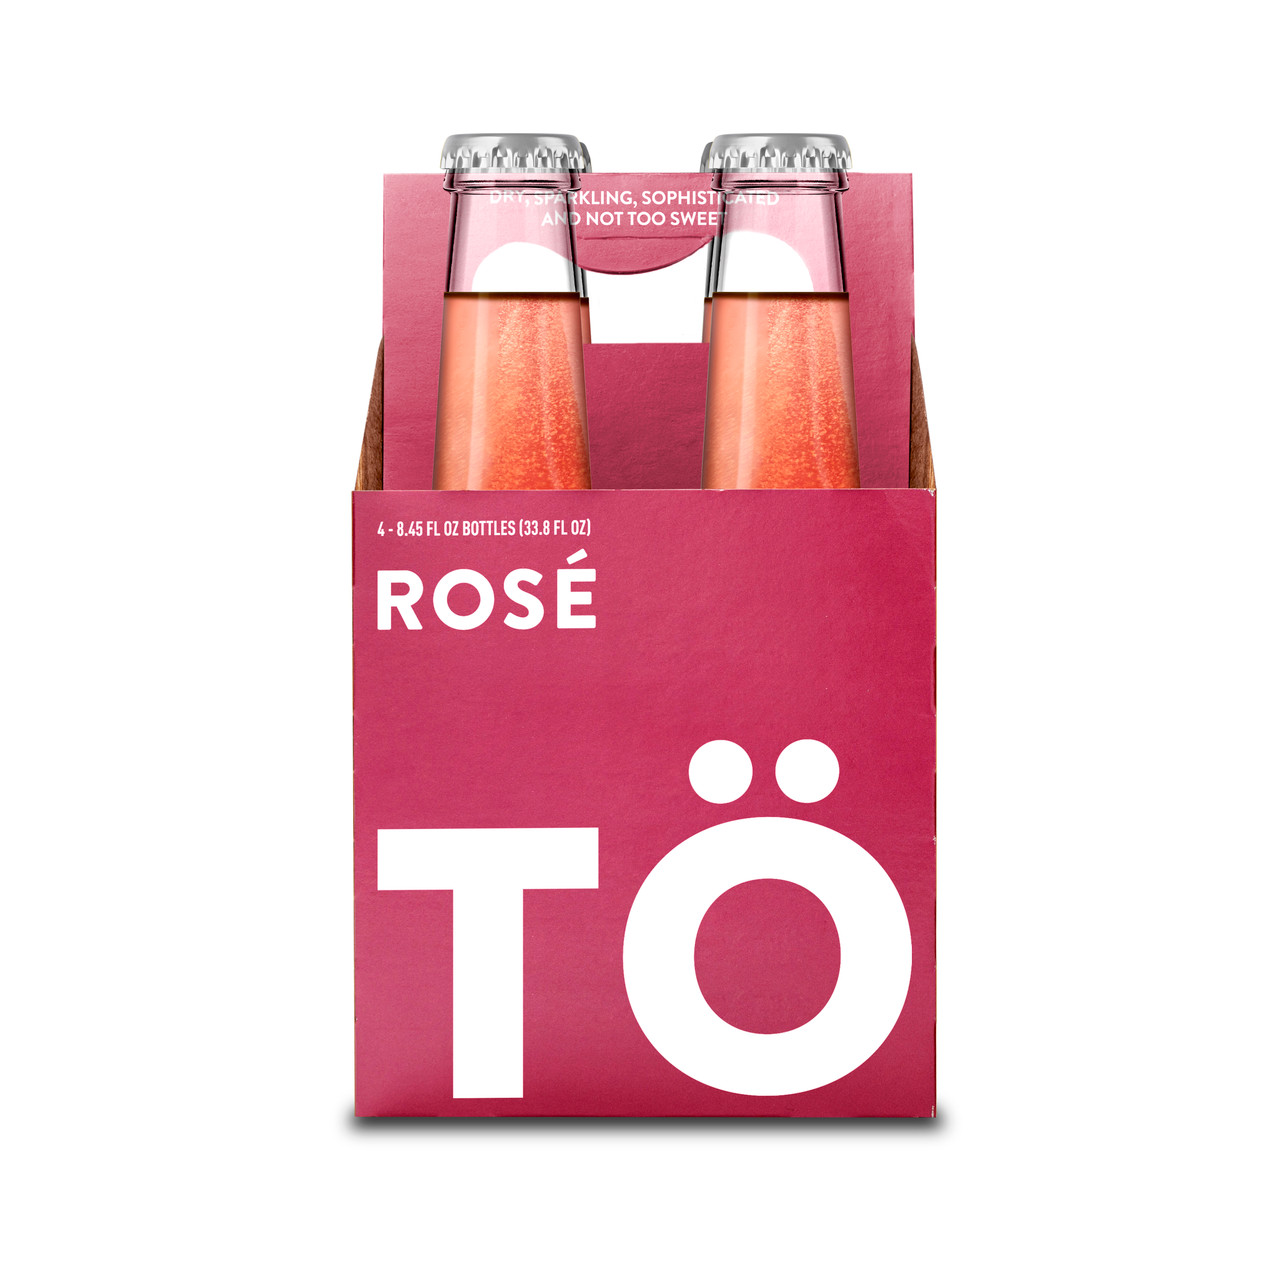 Rose Soul Refresher Drink, Tea